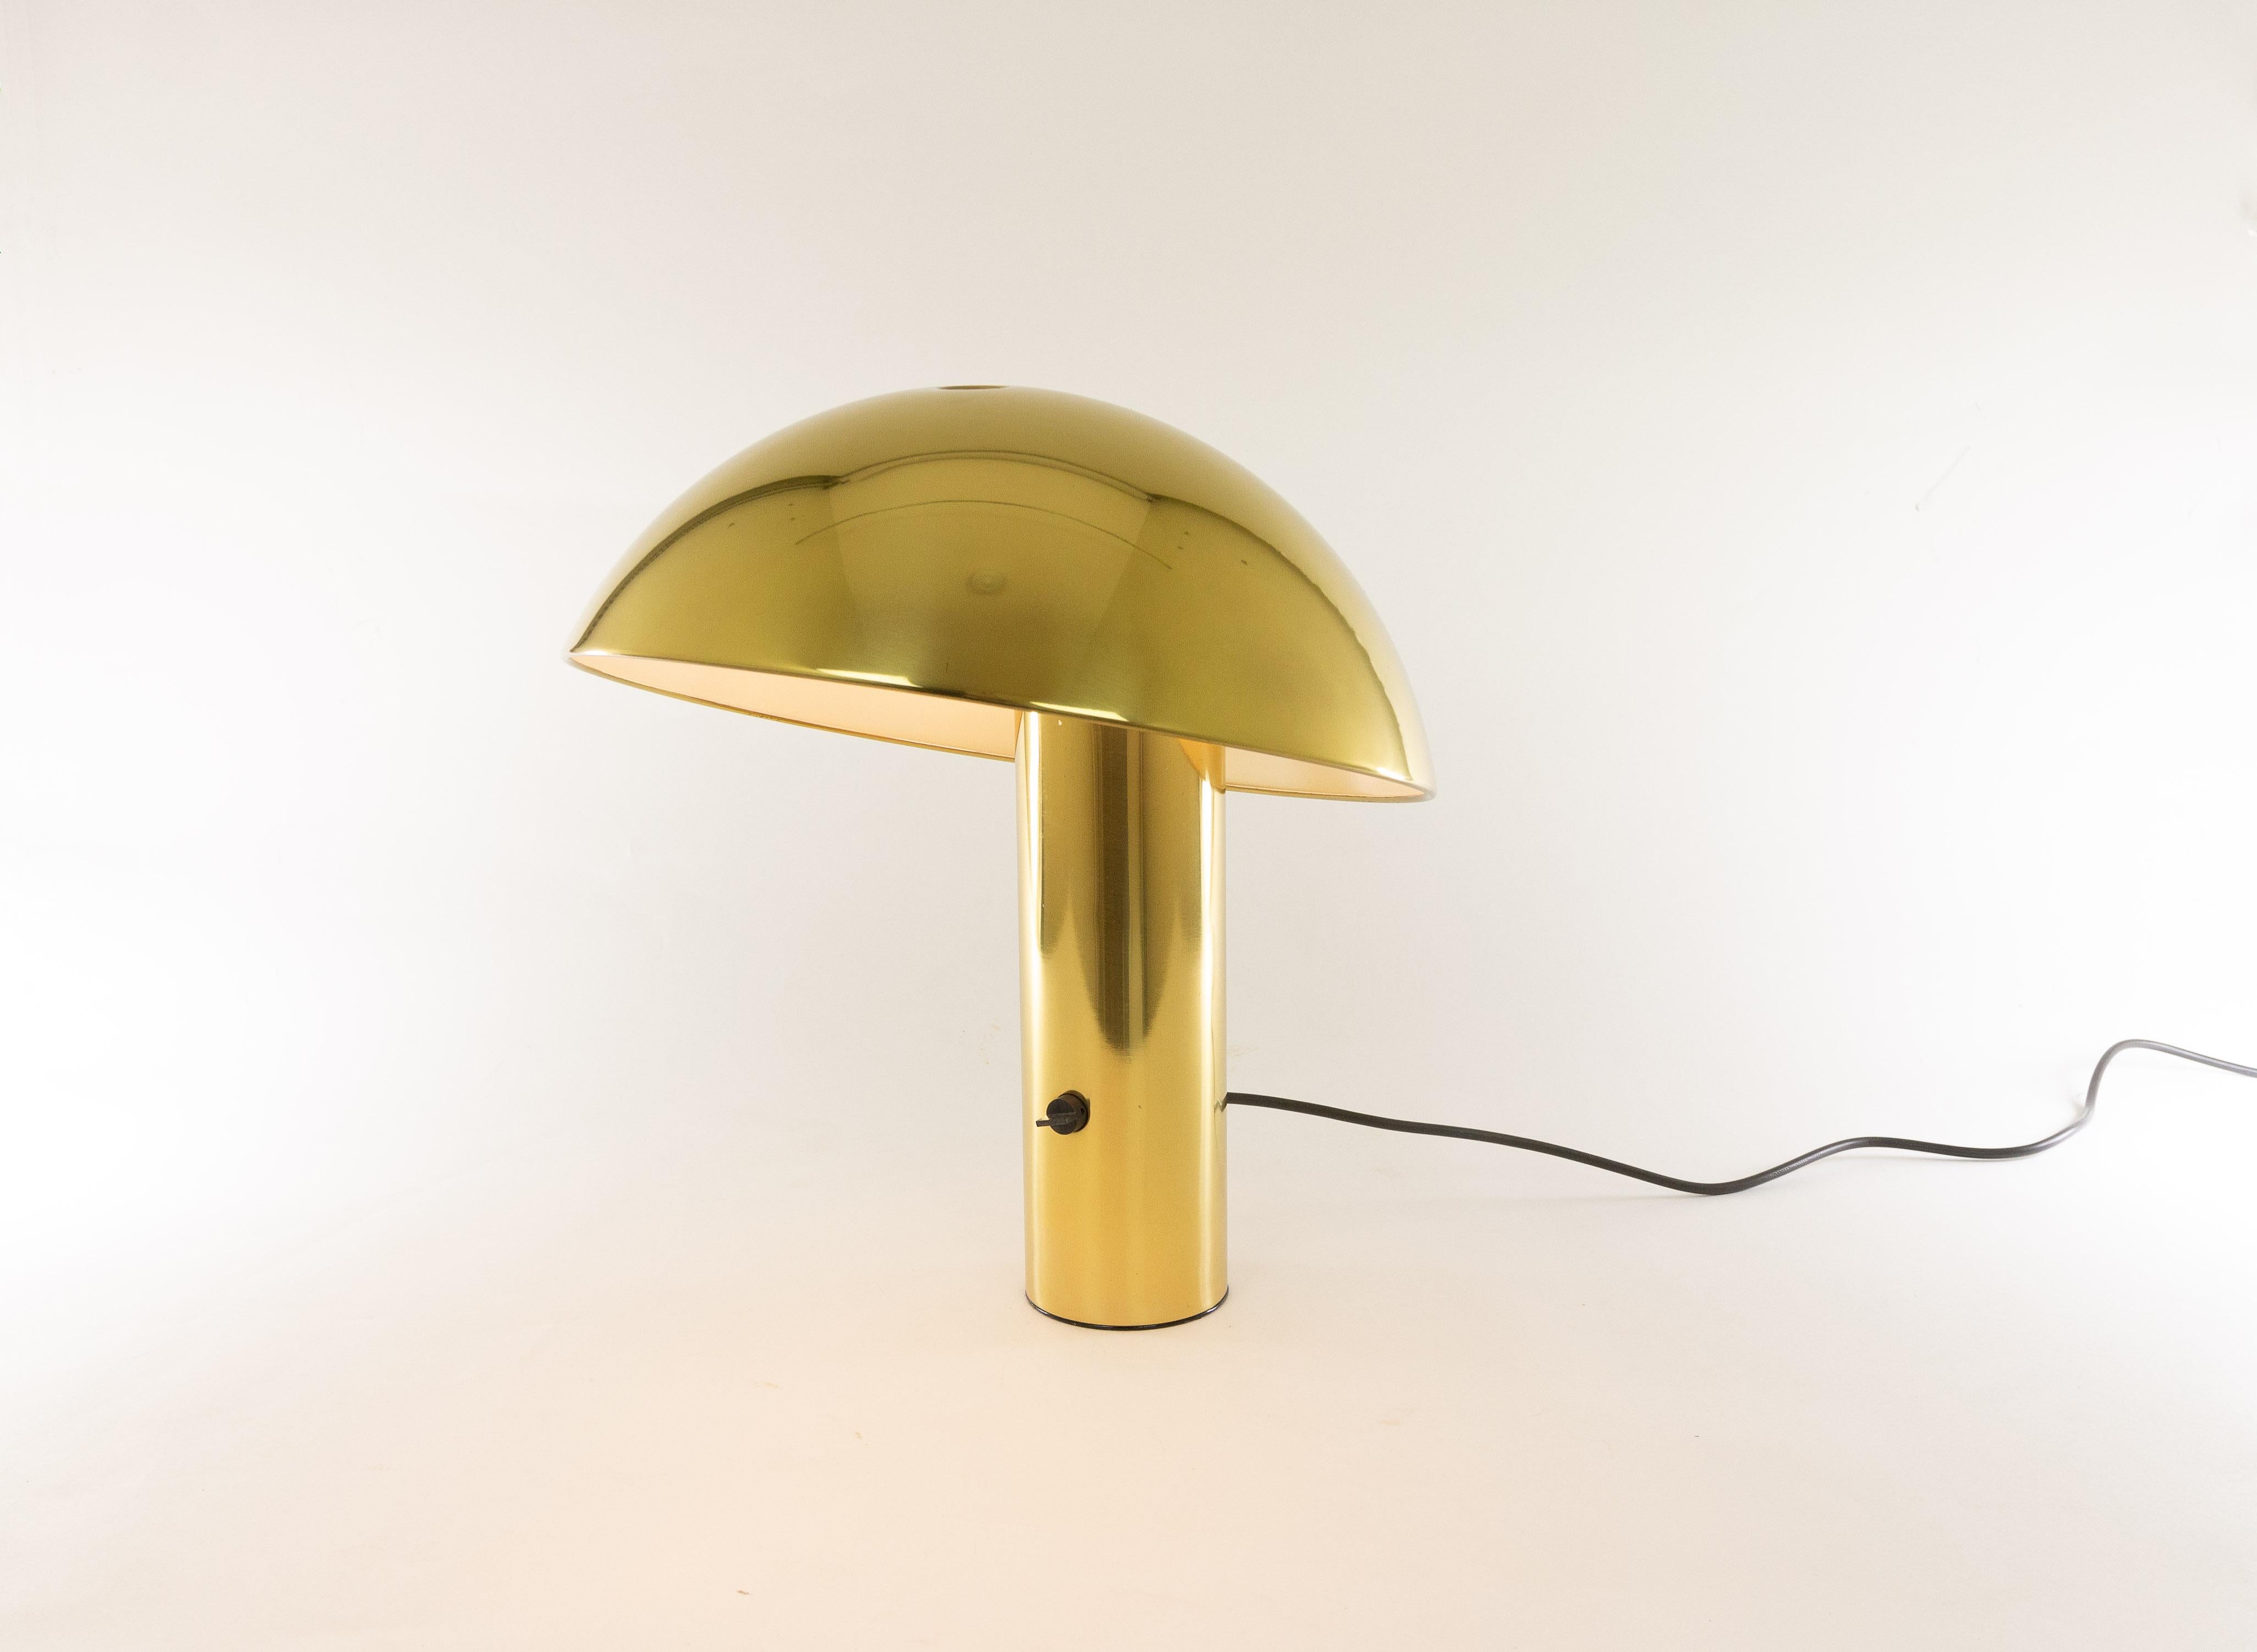 Lampe de table en laiton, modèle Vaga, conçue par Franco Mirenzi en 1978. La lampe est produite par Valenti Luce.

La base relativement lourde fournit un équilibre solide pour le sommet rond en métal assez grand de la lampe. La lampe est en métal et